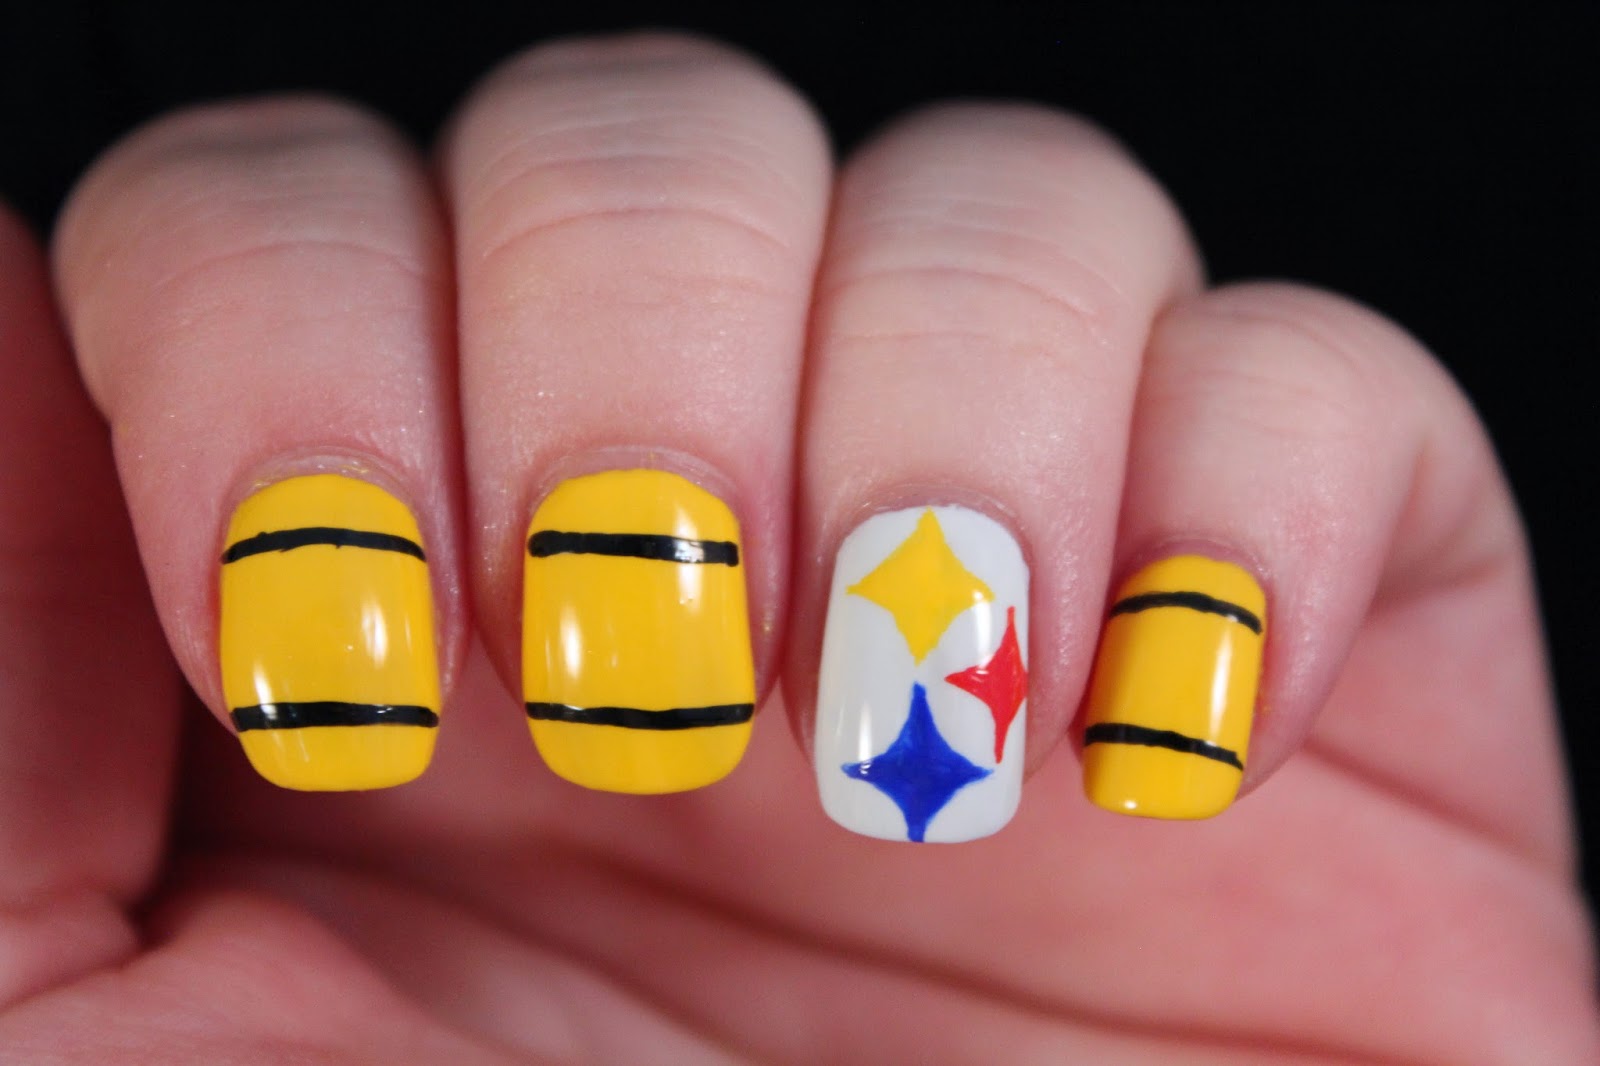 8. Steelers Nail Art Designs - wide 6